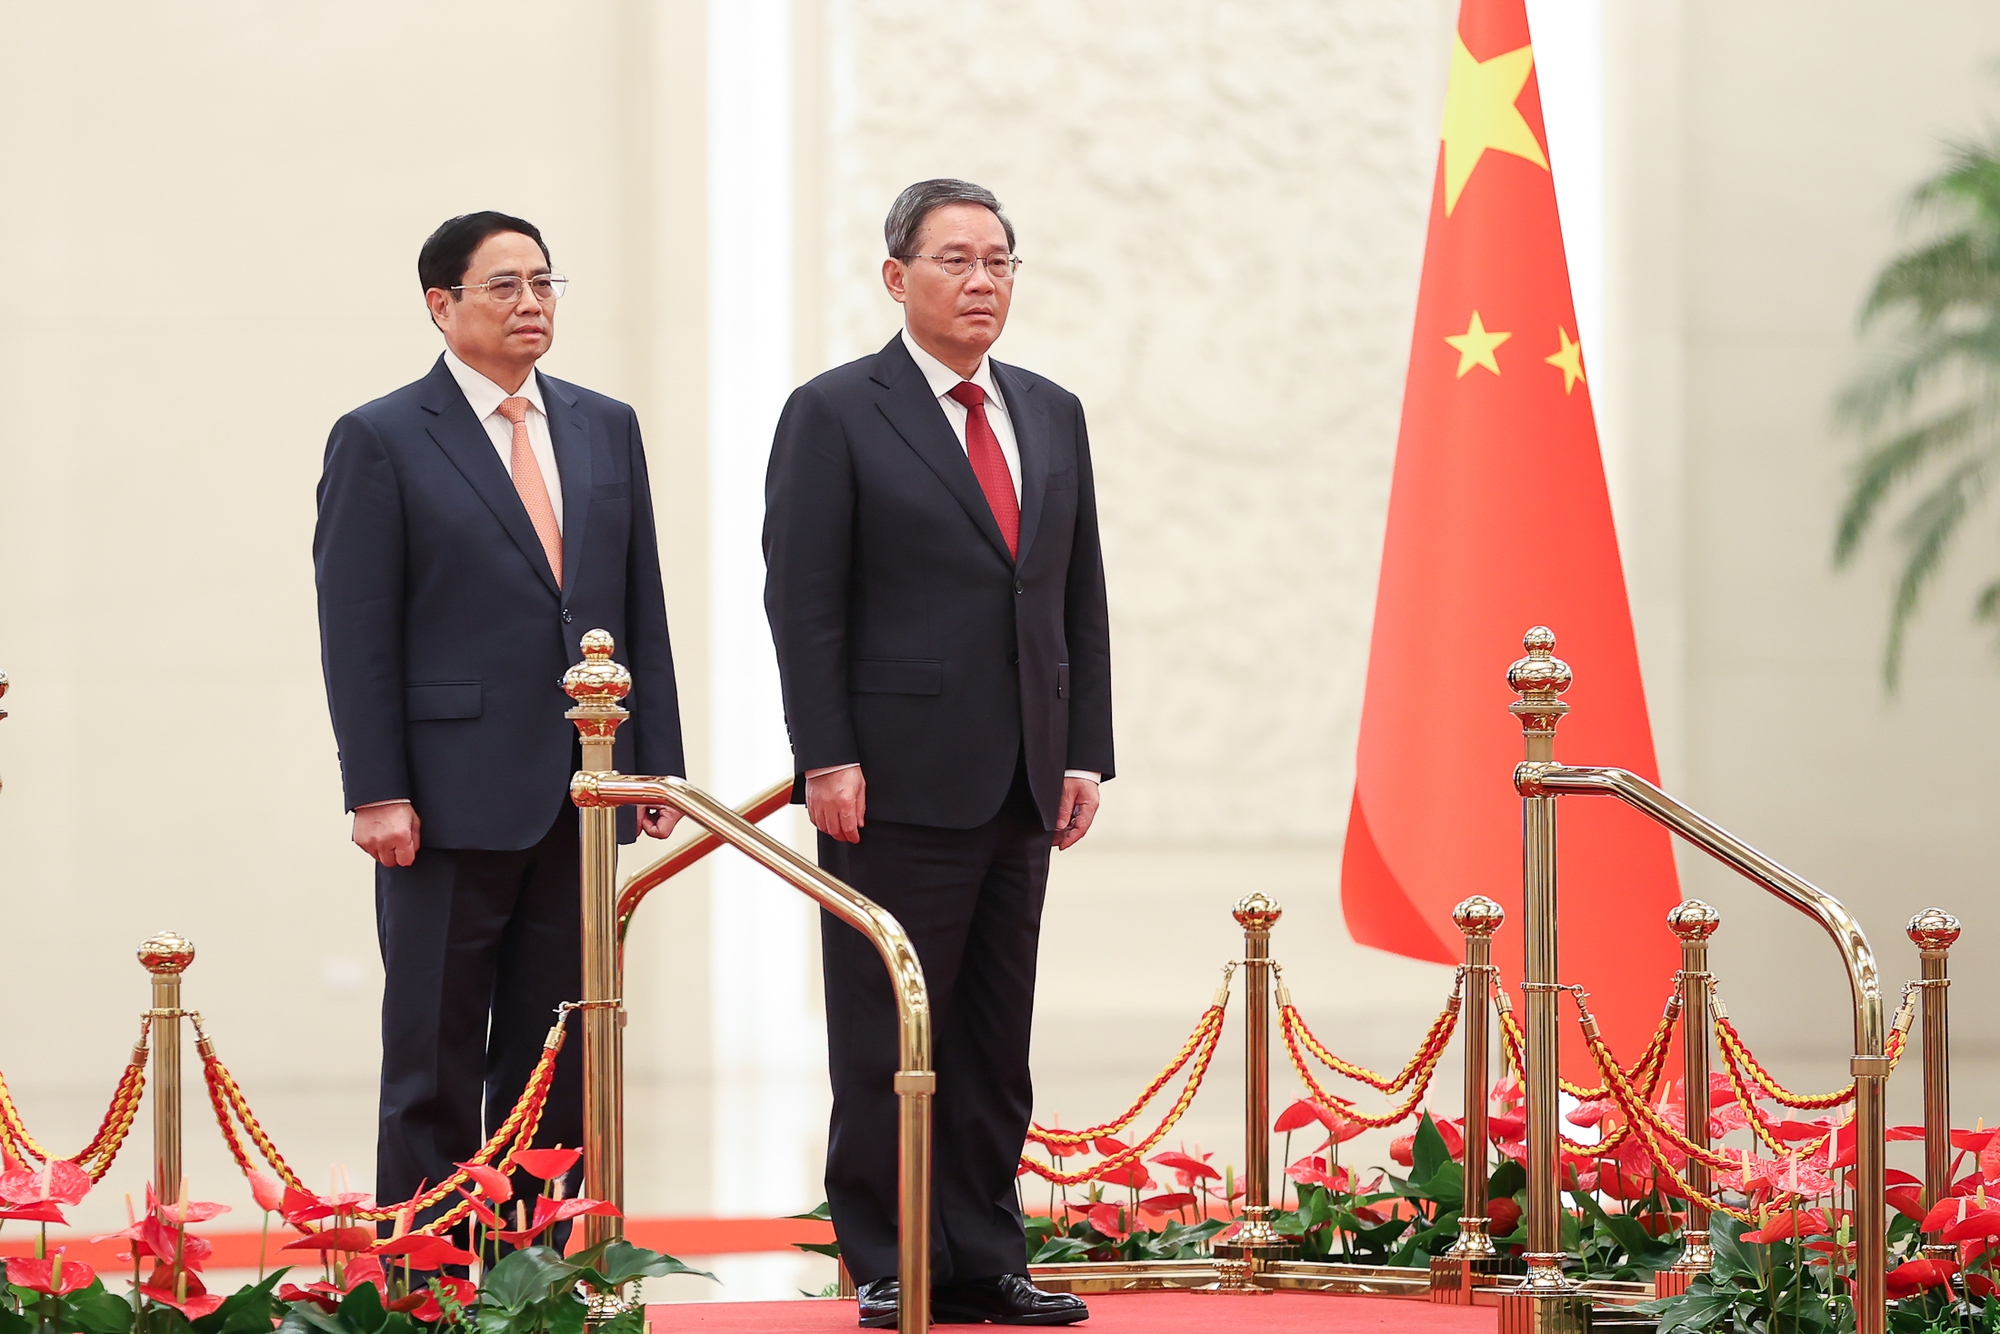 Chùm ảnh: Lễ đón chính thức Thủ tướng Chính phủ Phạm Minh Chính thăm Trung Quốc - Ảnh 4.